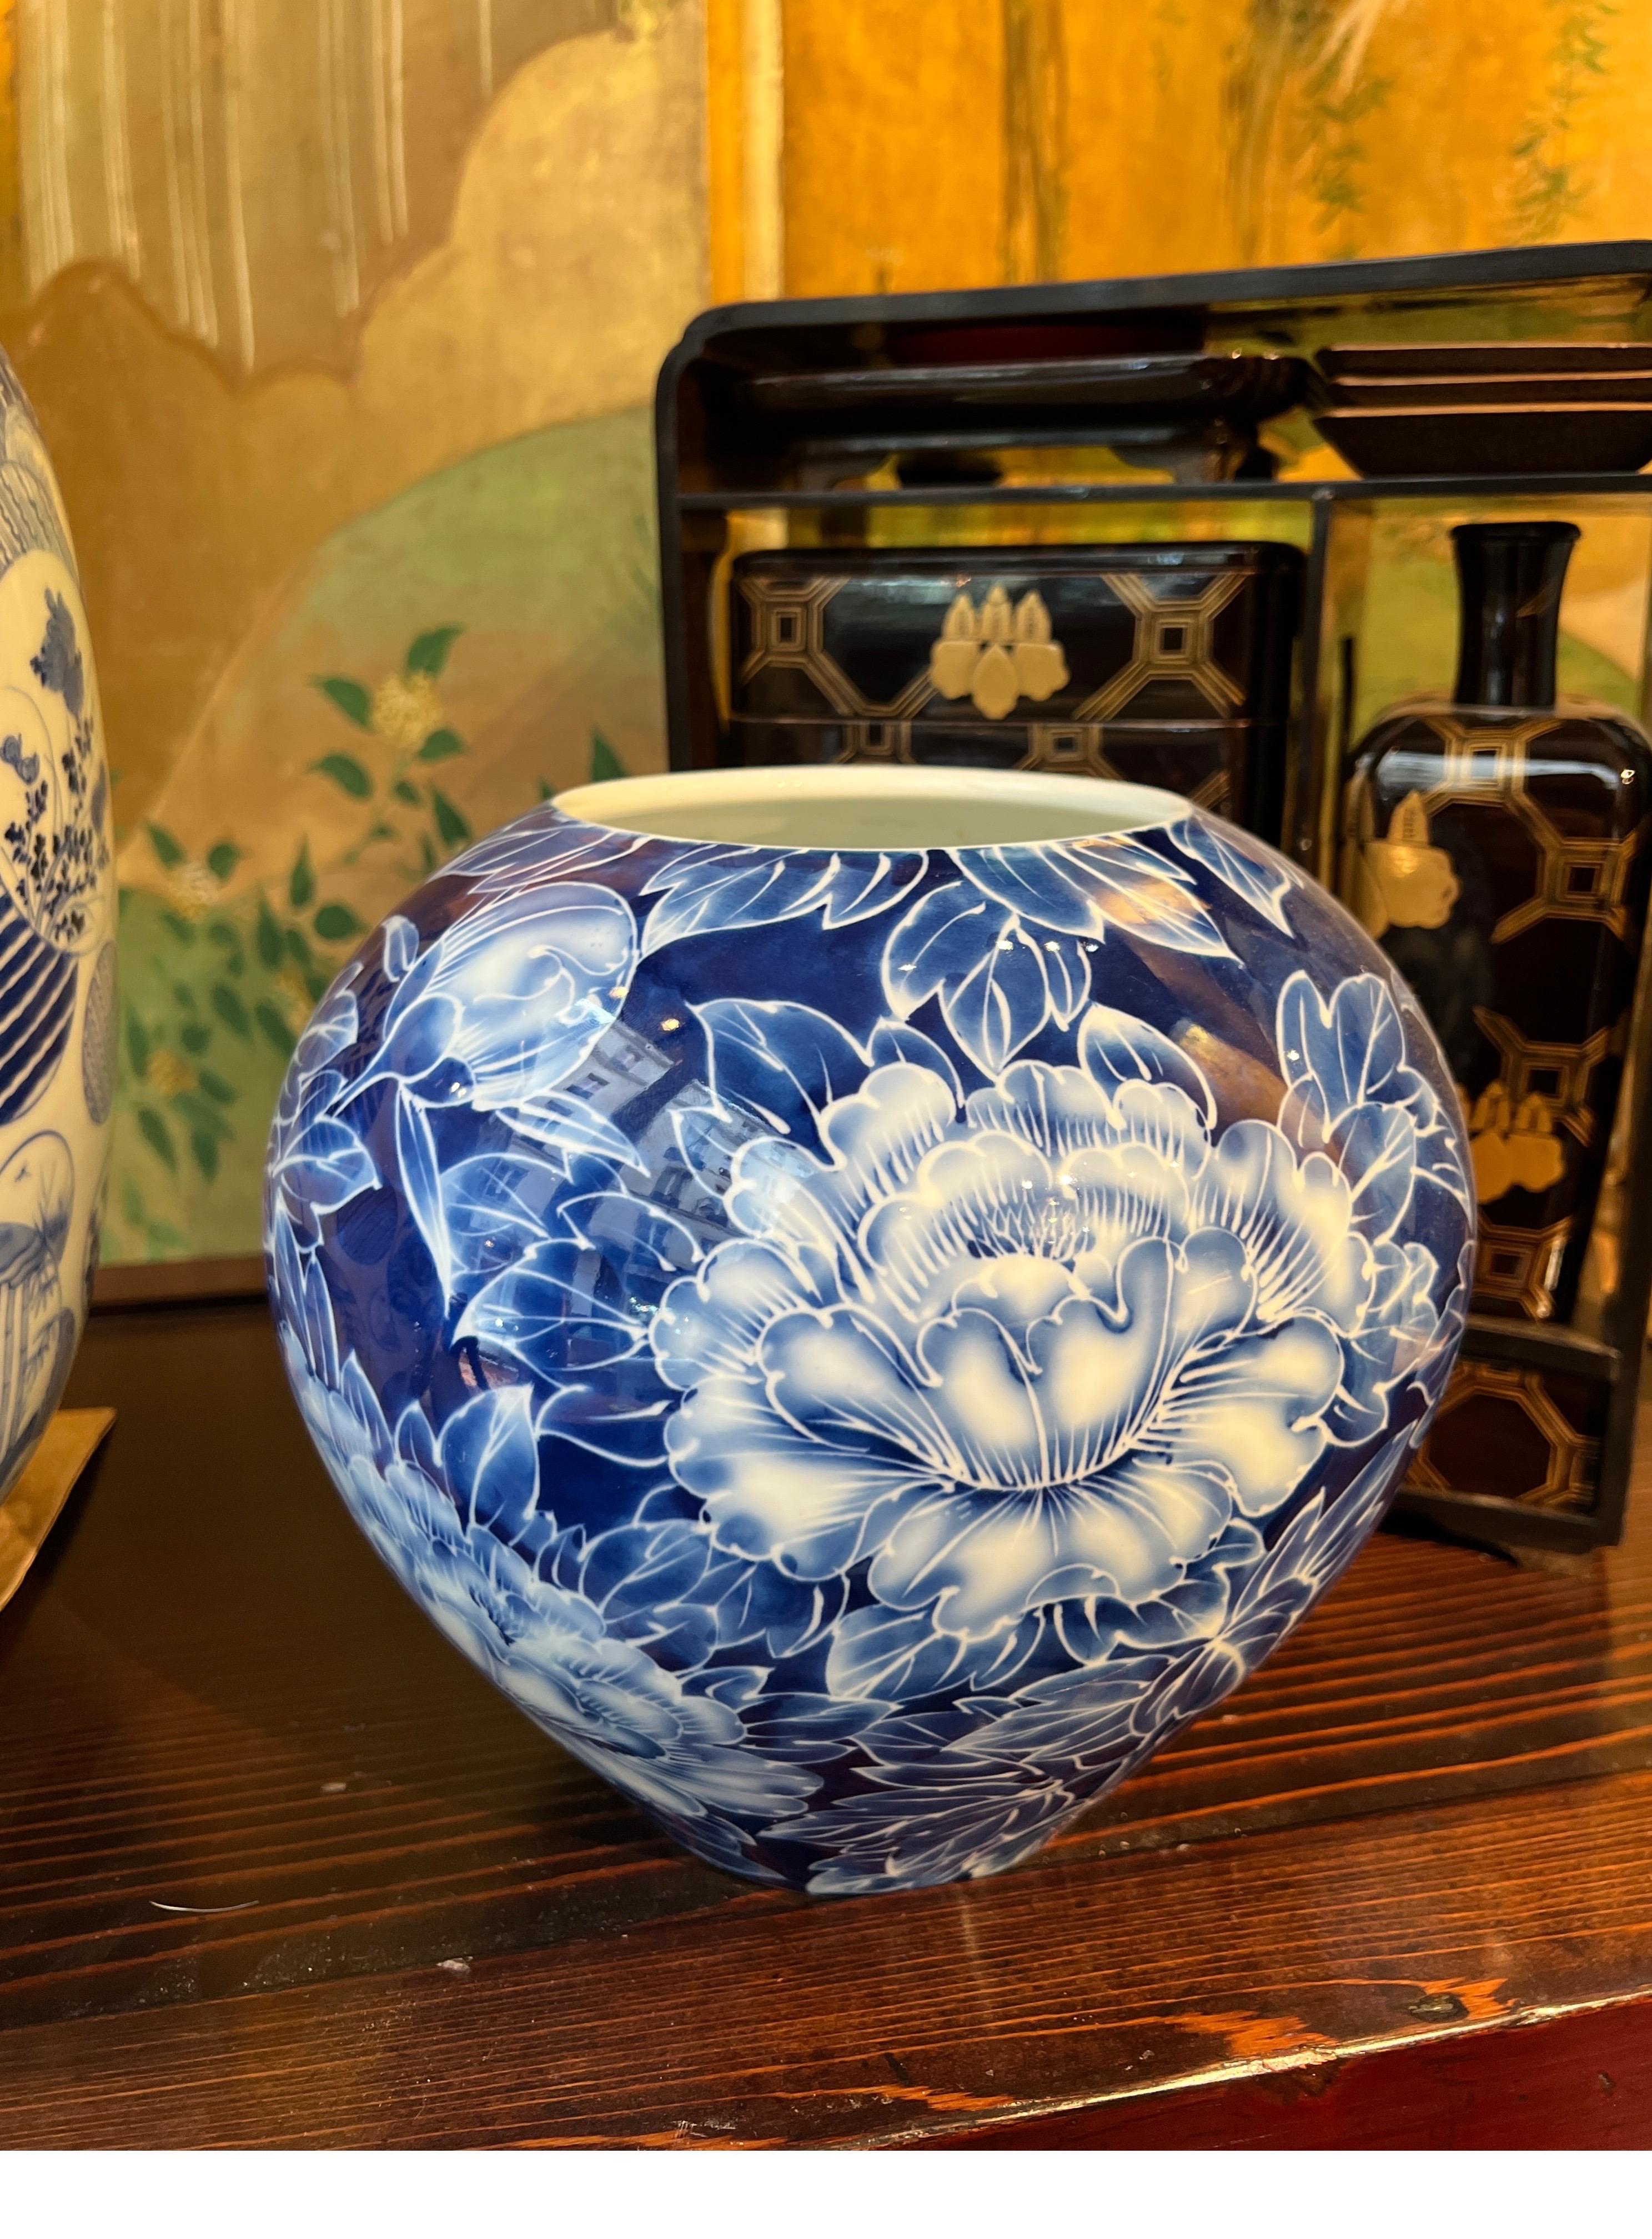 Un Japonais époustouflant  vase en porcelaine, aux teintes bleues vibrantes et orné d'un  des motifs exquis de pivoines.
 Ce vase globulaire présente des détails minutieux peints à la main, ce qui ajoute à son attrait en tant que pièce décorative.

